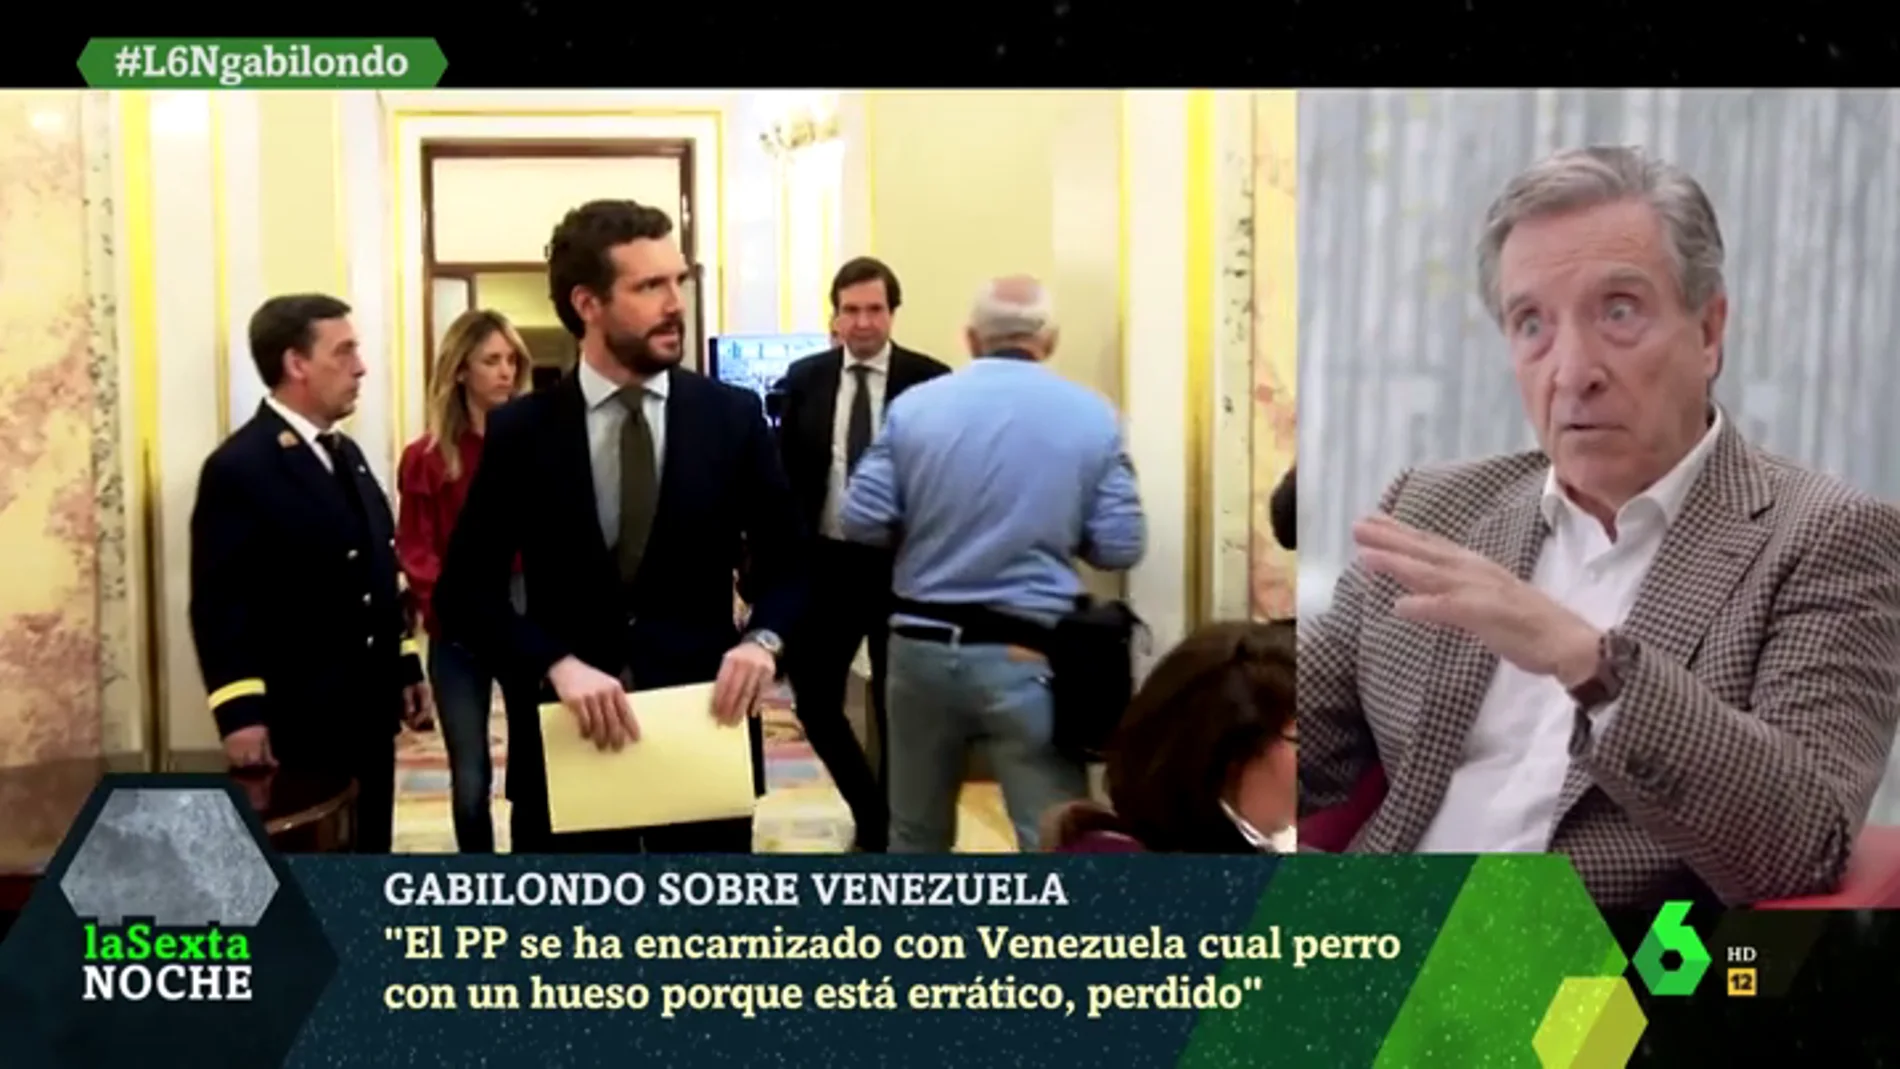 Iñaki Gabilondo: "El PP está perdido y Casado errático, ha convertido Venezuela en el centro de atención nacional"